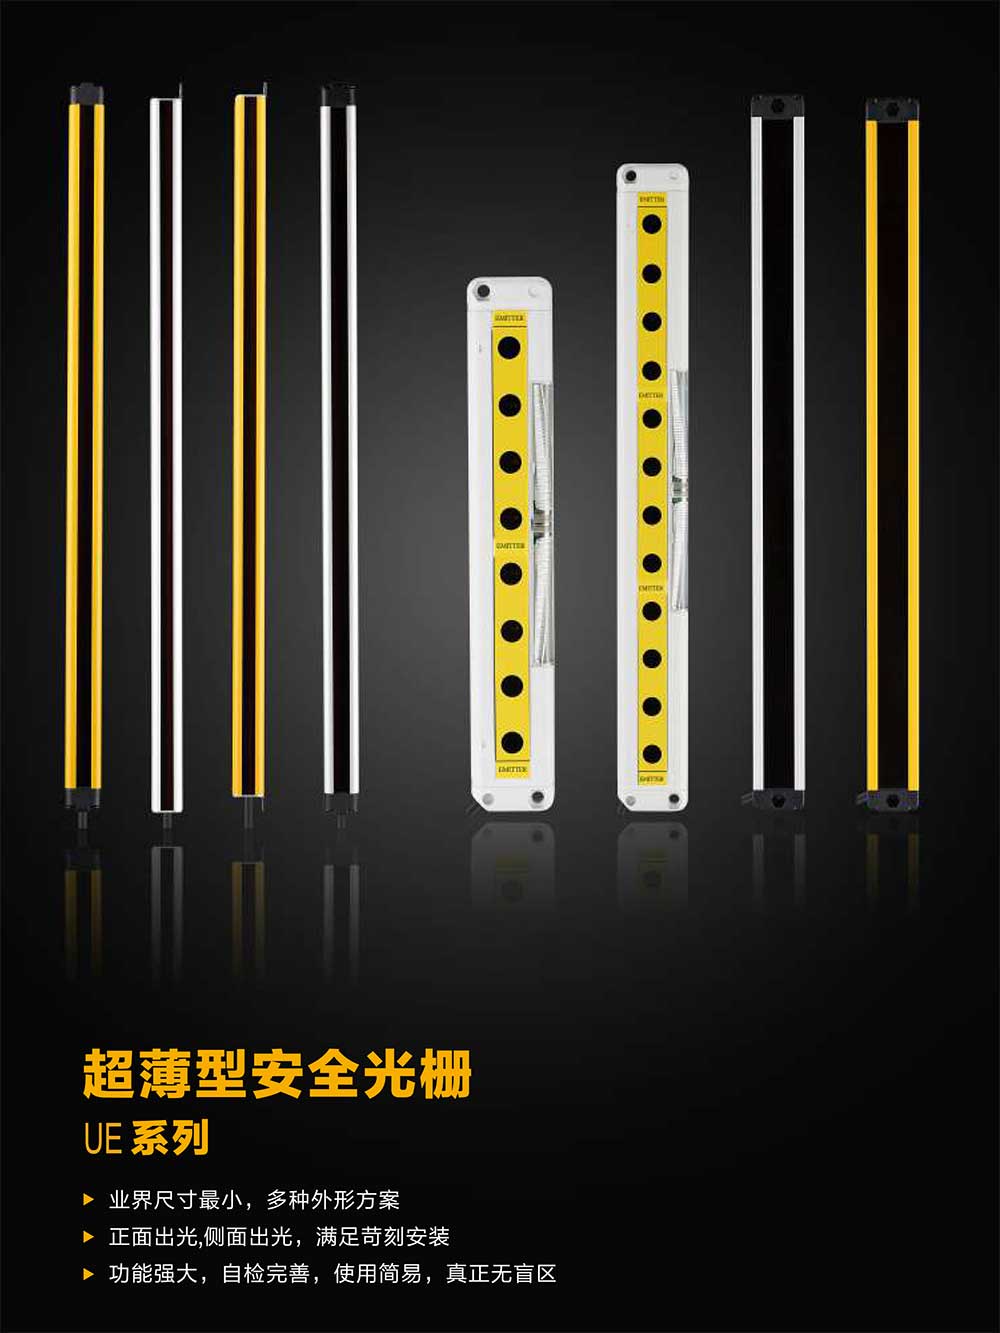 超薄型安全光柵UE系列